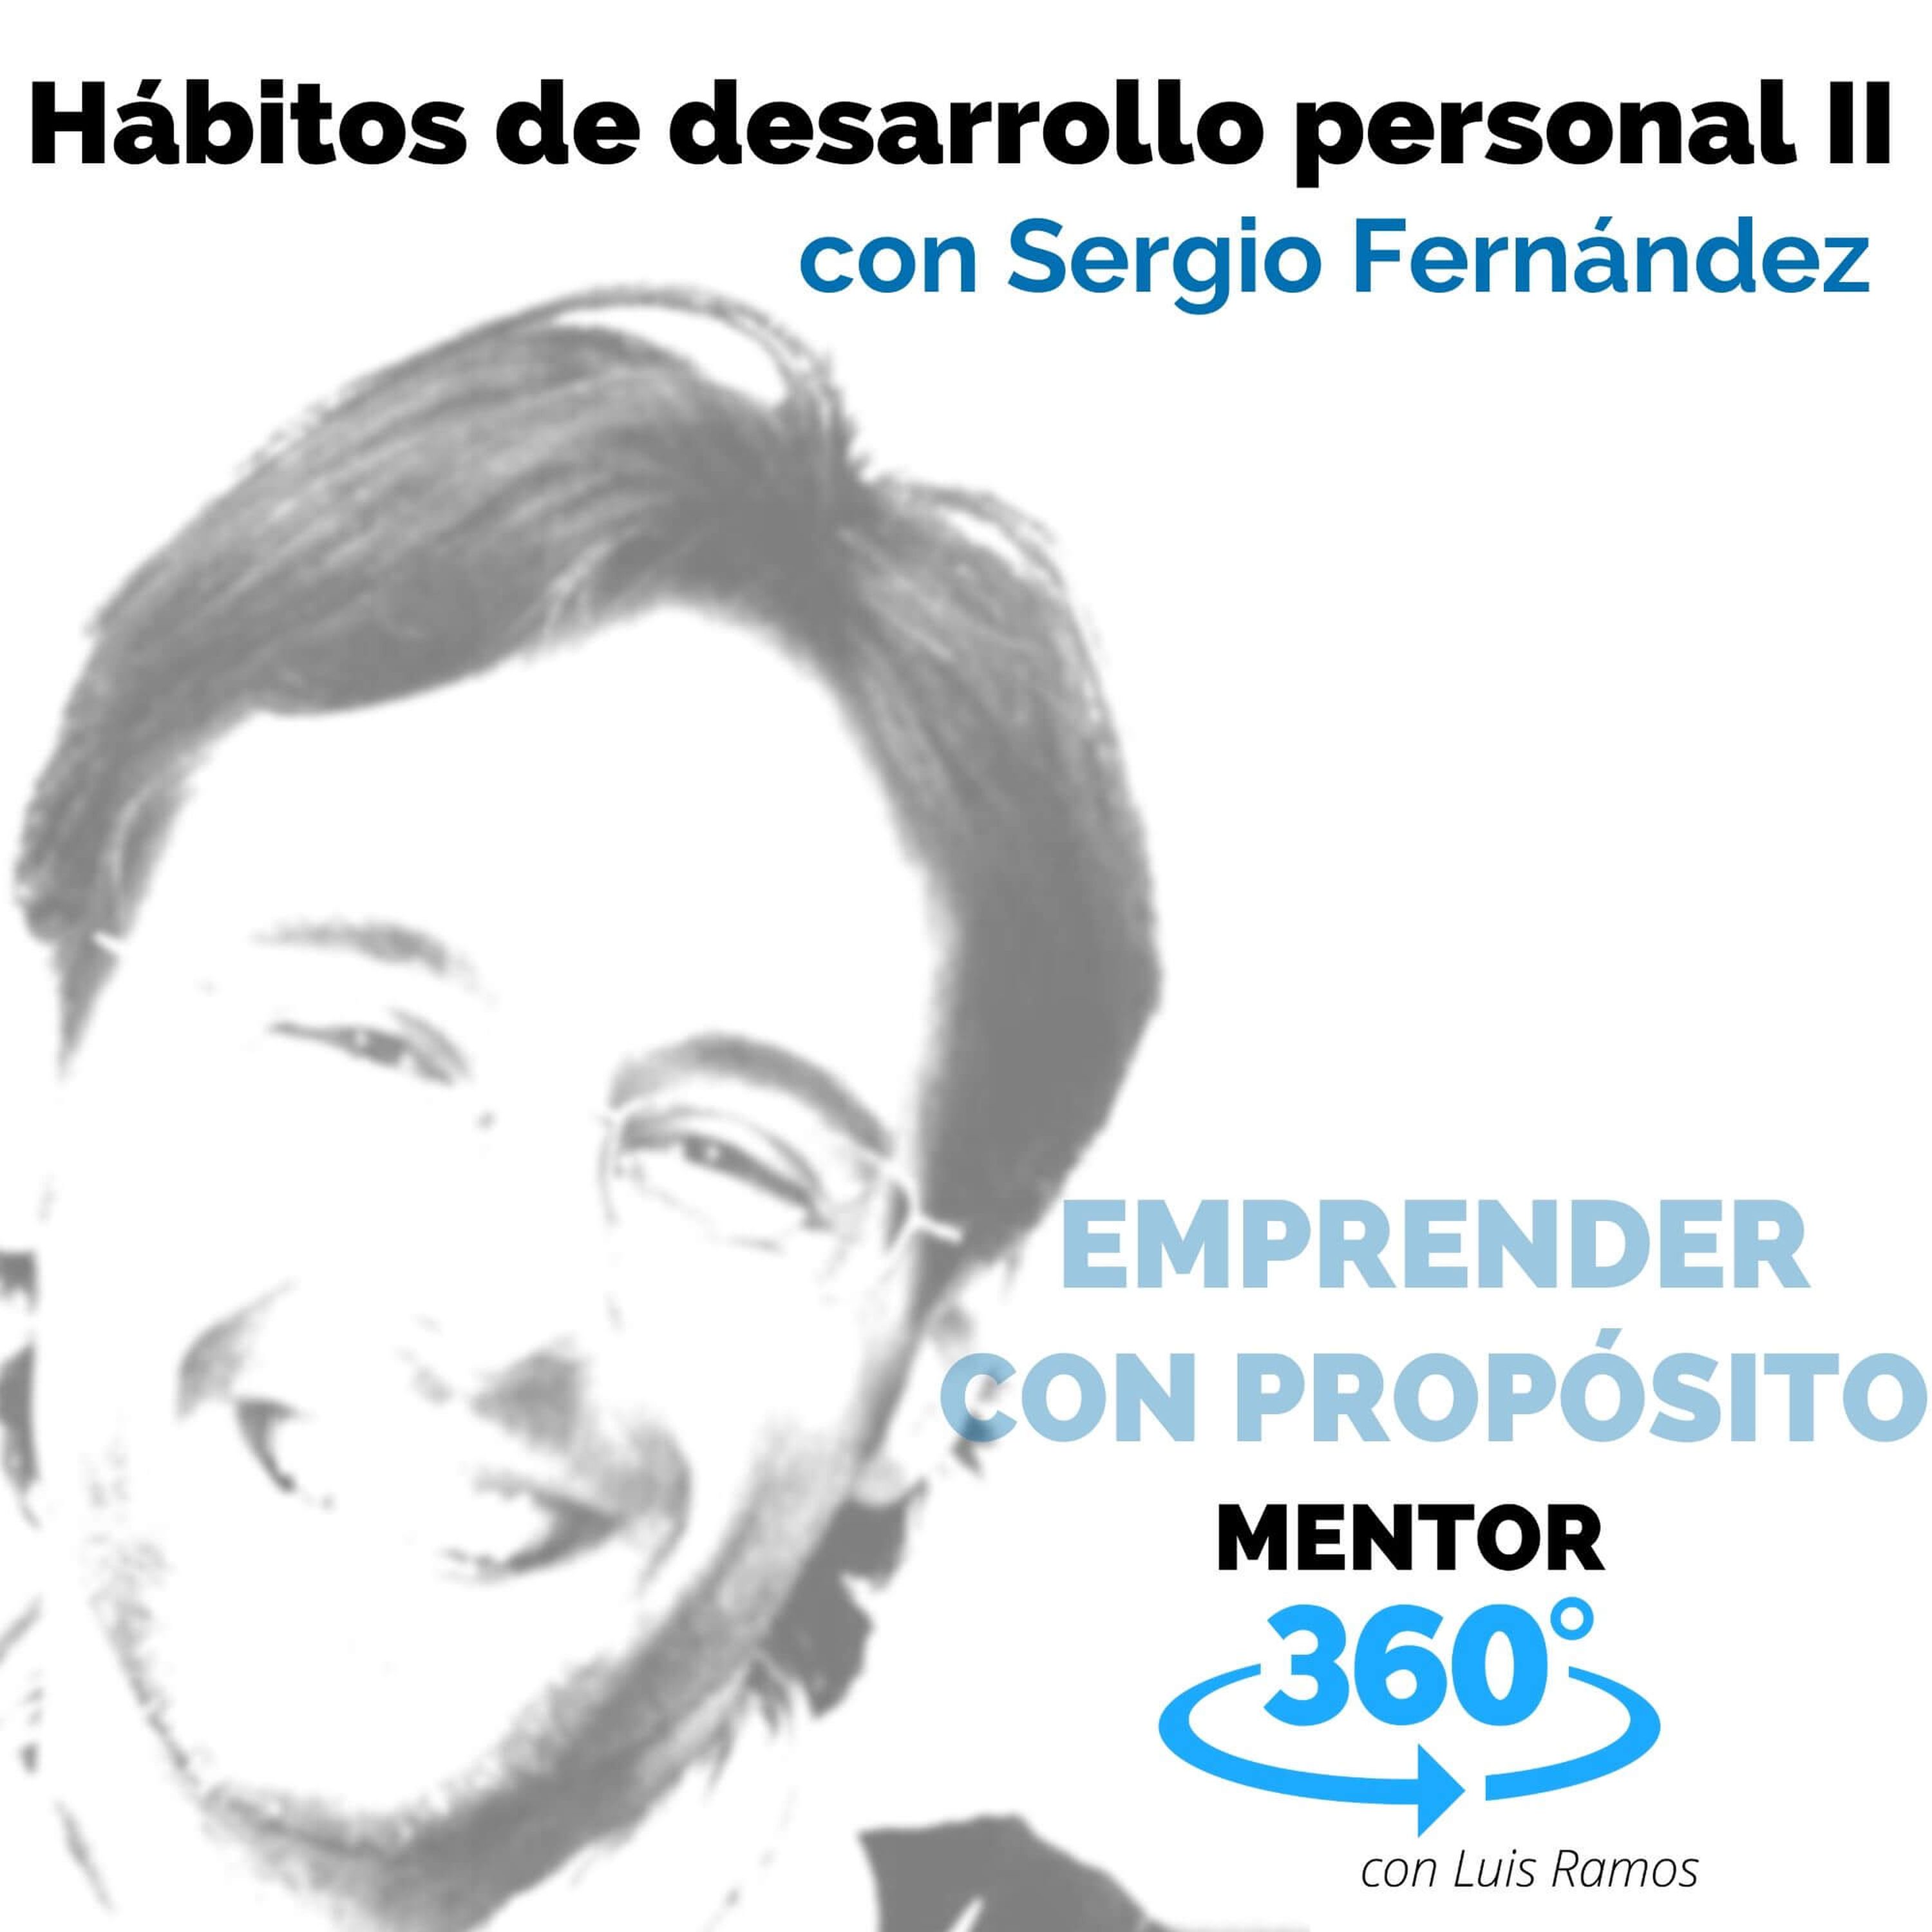 Hábitos de desarrollo personal II, con Sergio Fernández - EMPRENDER CON PROPÓSITO